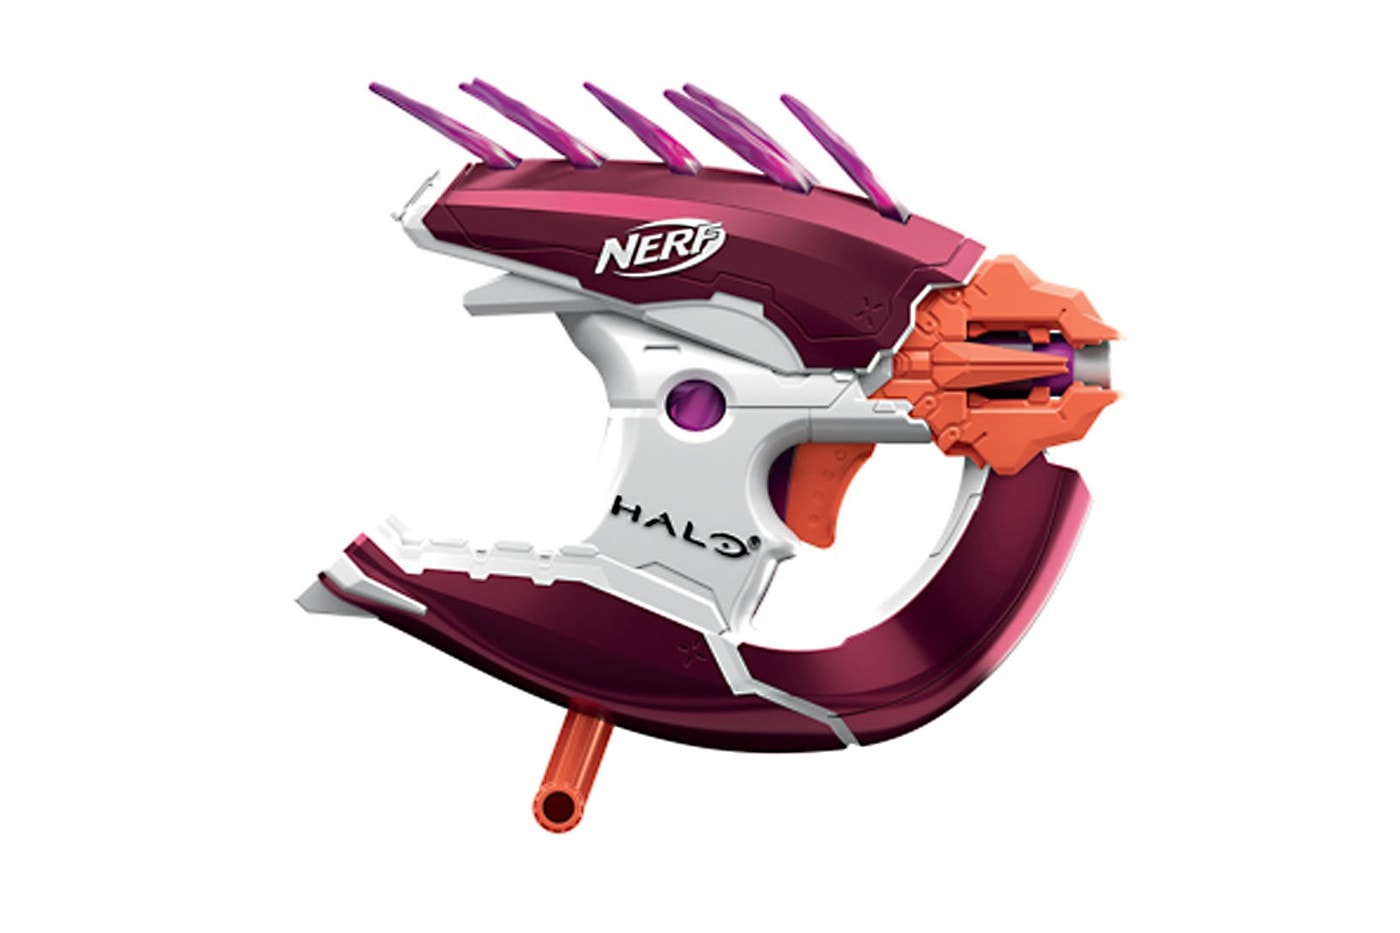 孩之寶以《Halo》為主題推出 NERF Blasters 系列玩具槍